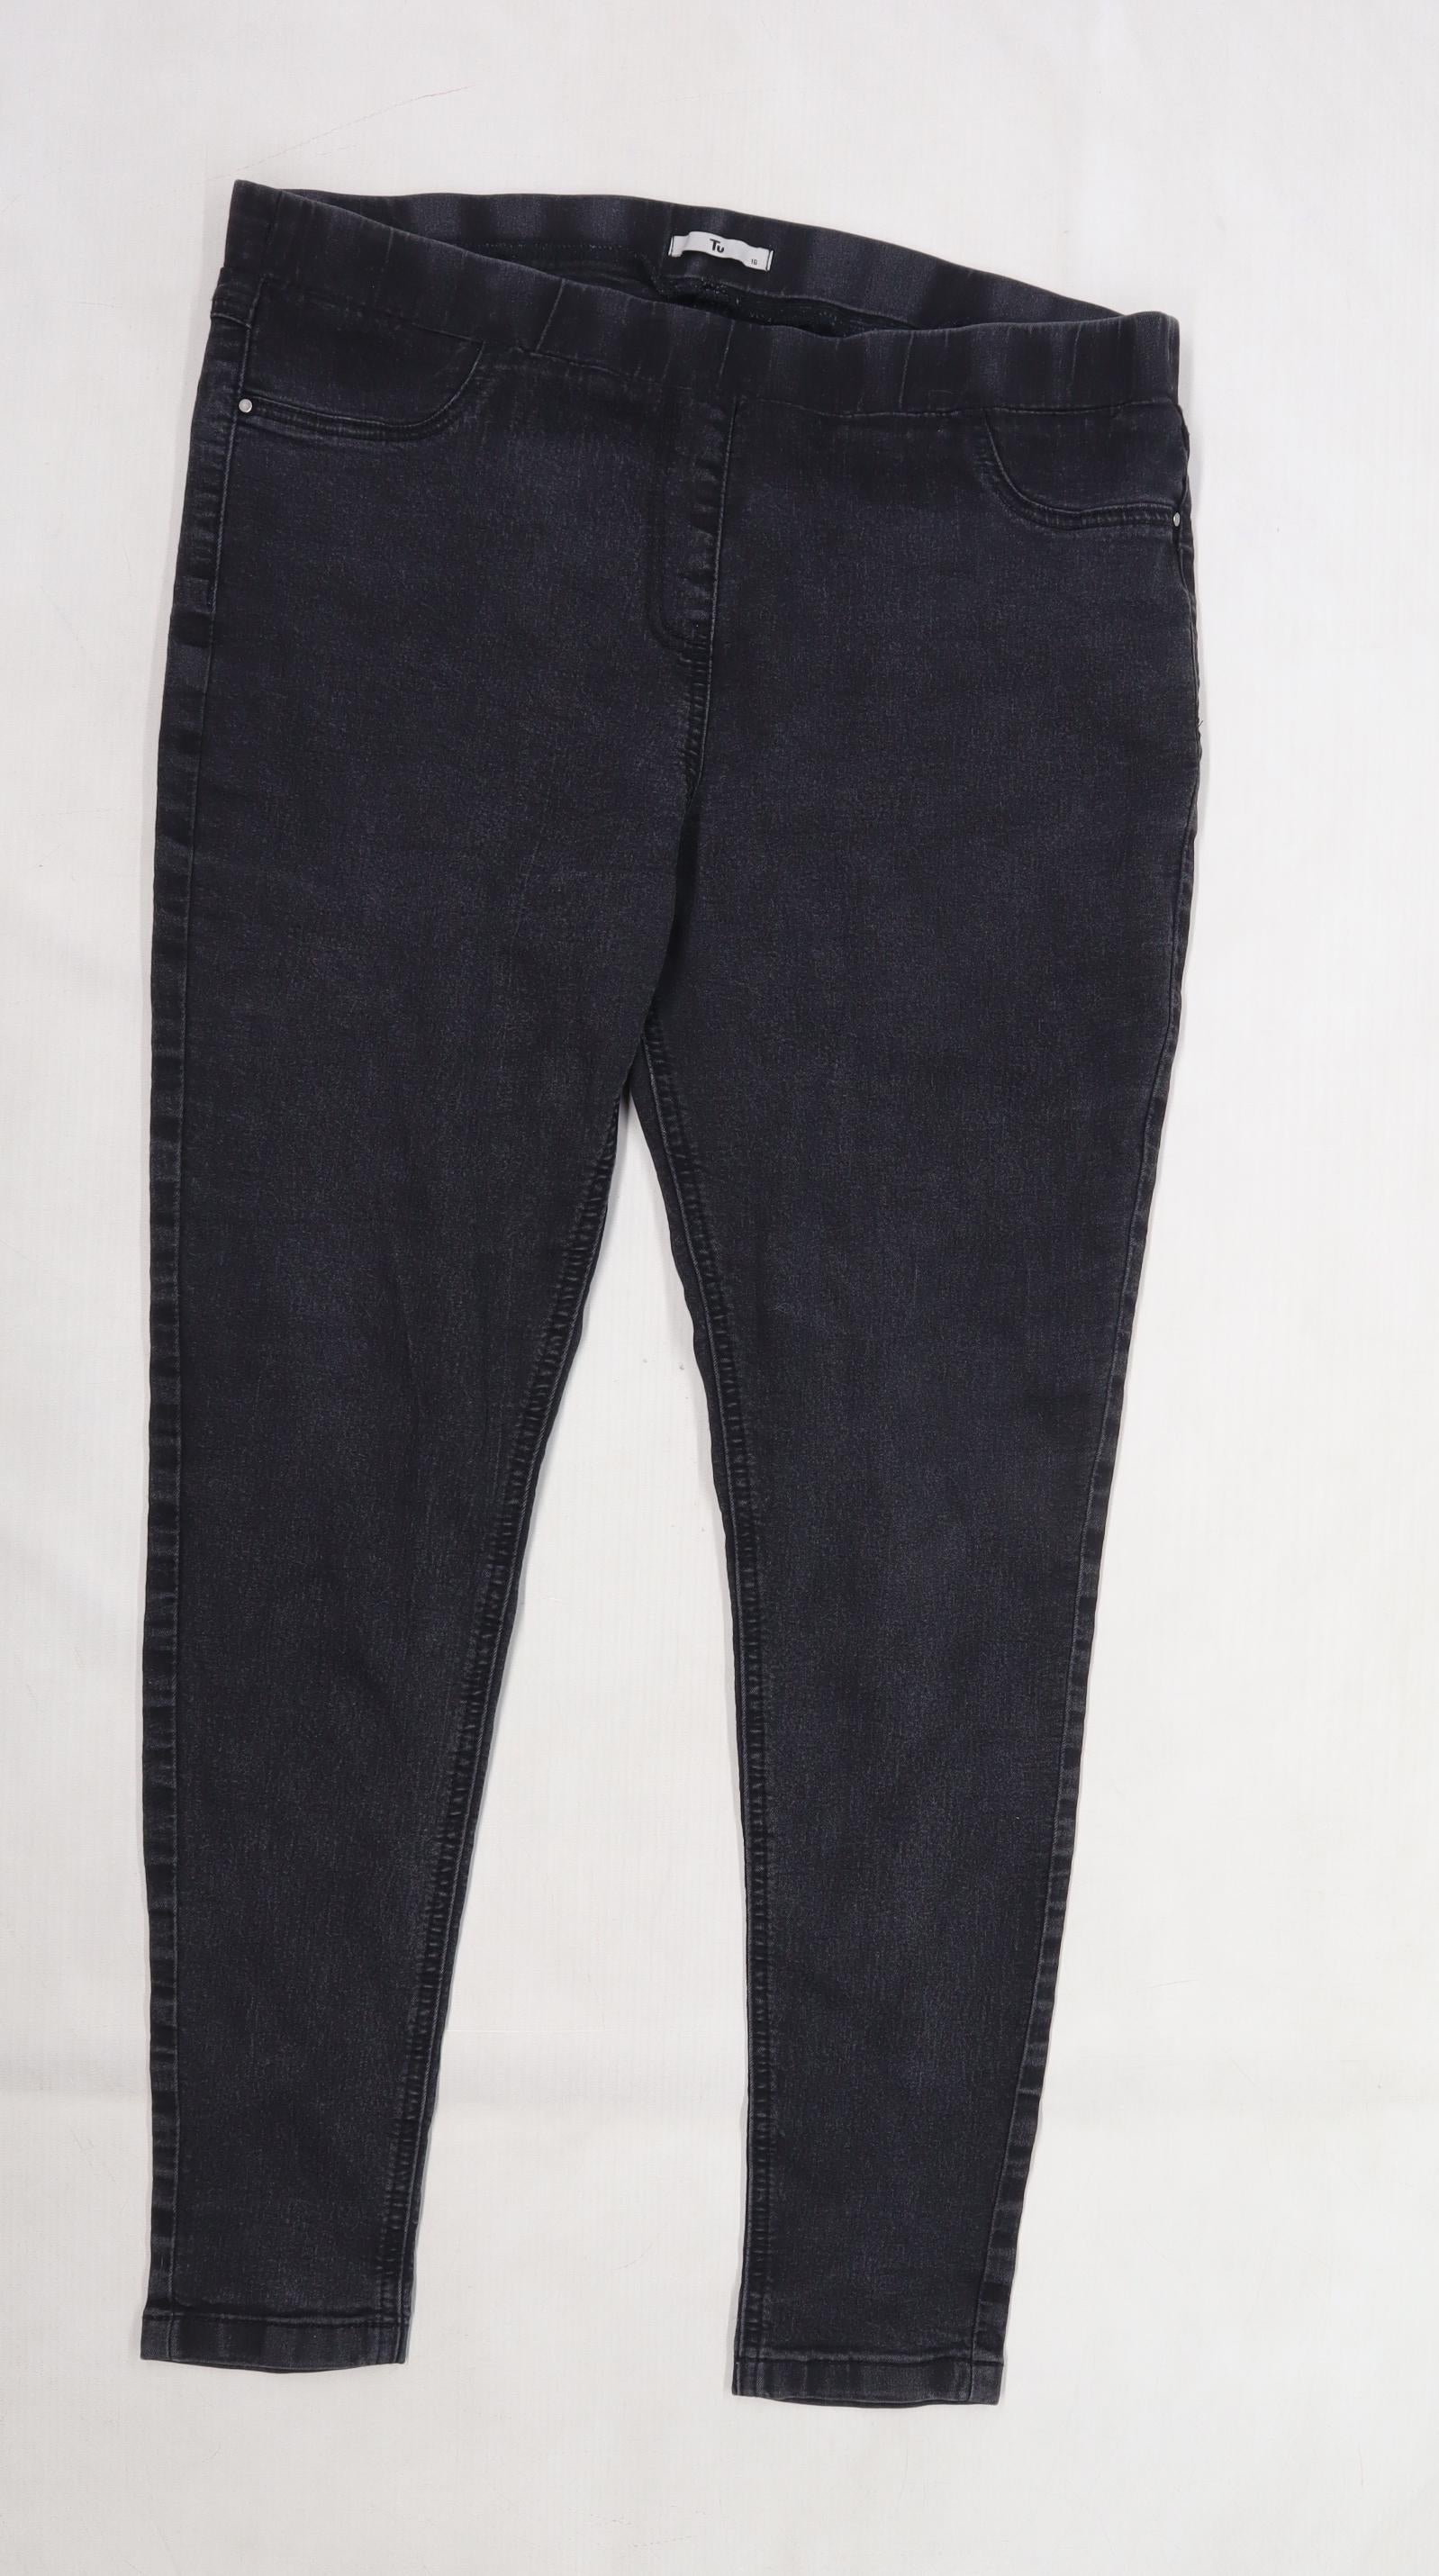 TU Womens Black Denim Skinny Jeans Size 16 L26 in – Preworn Ltd